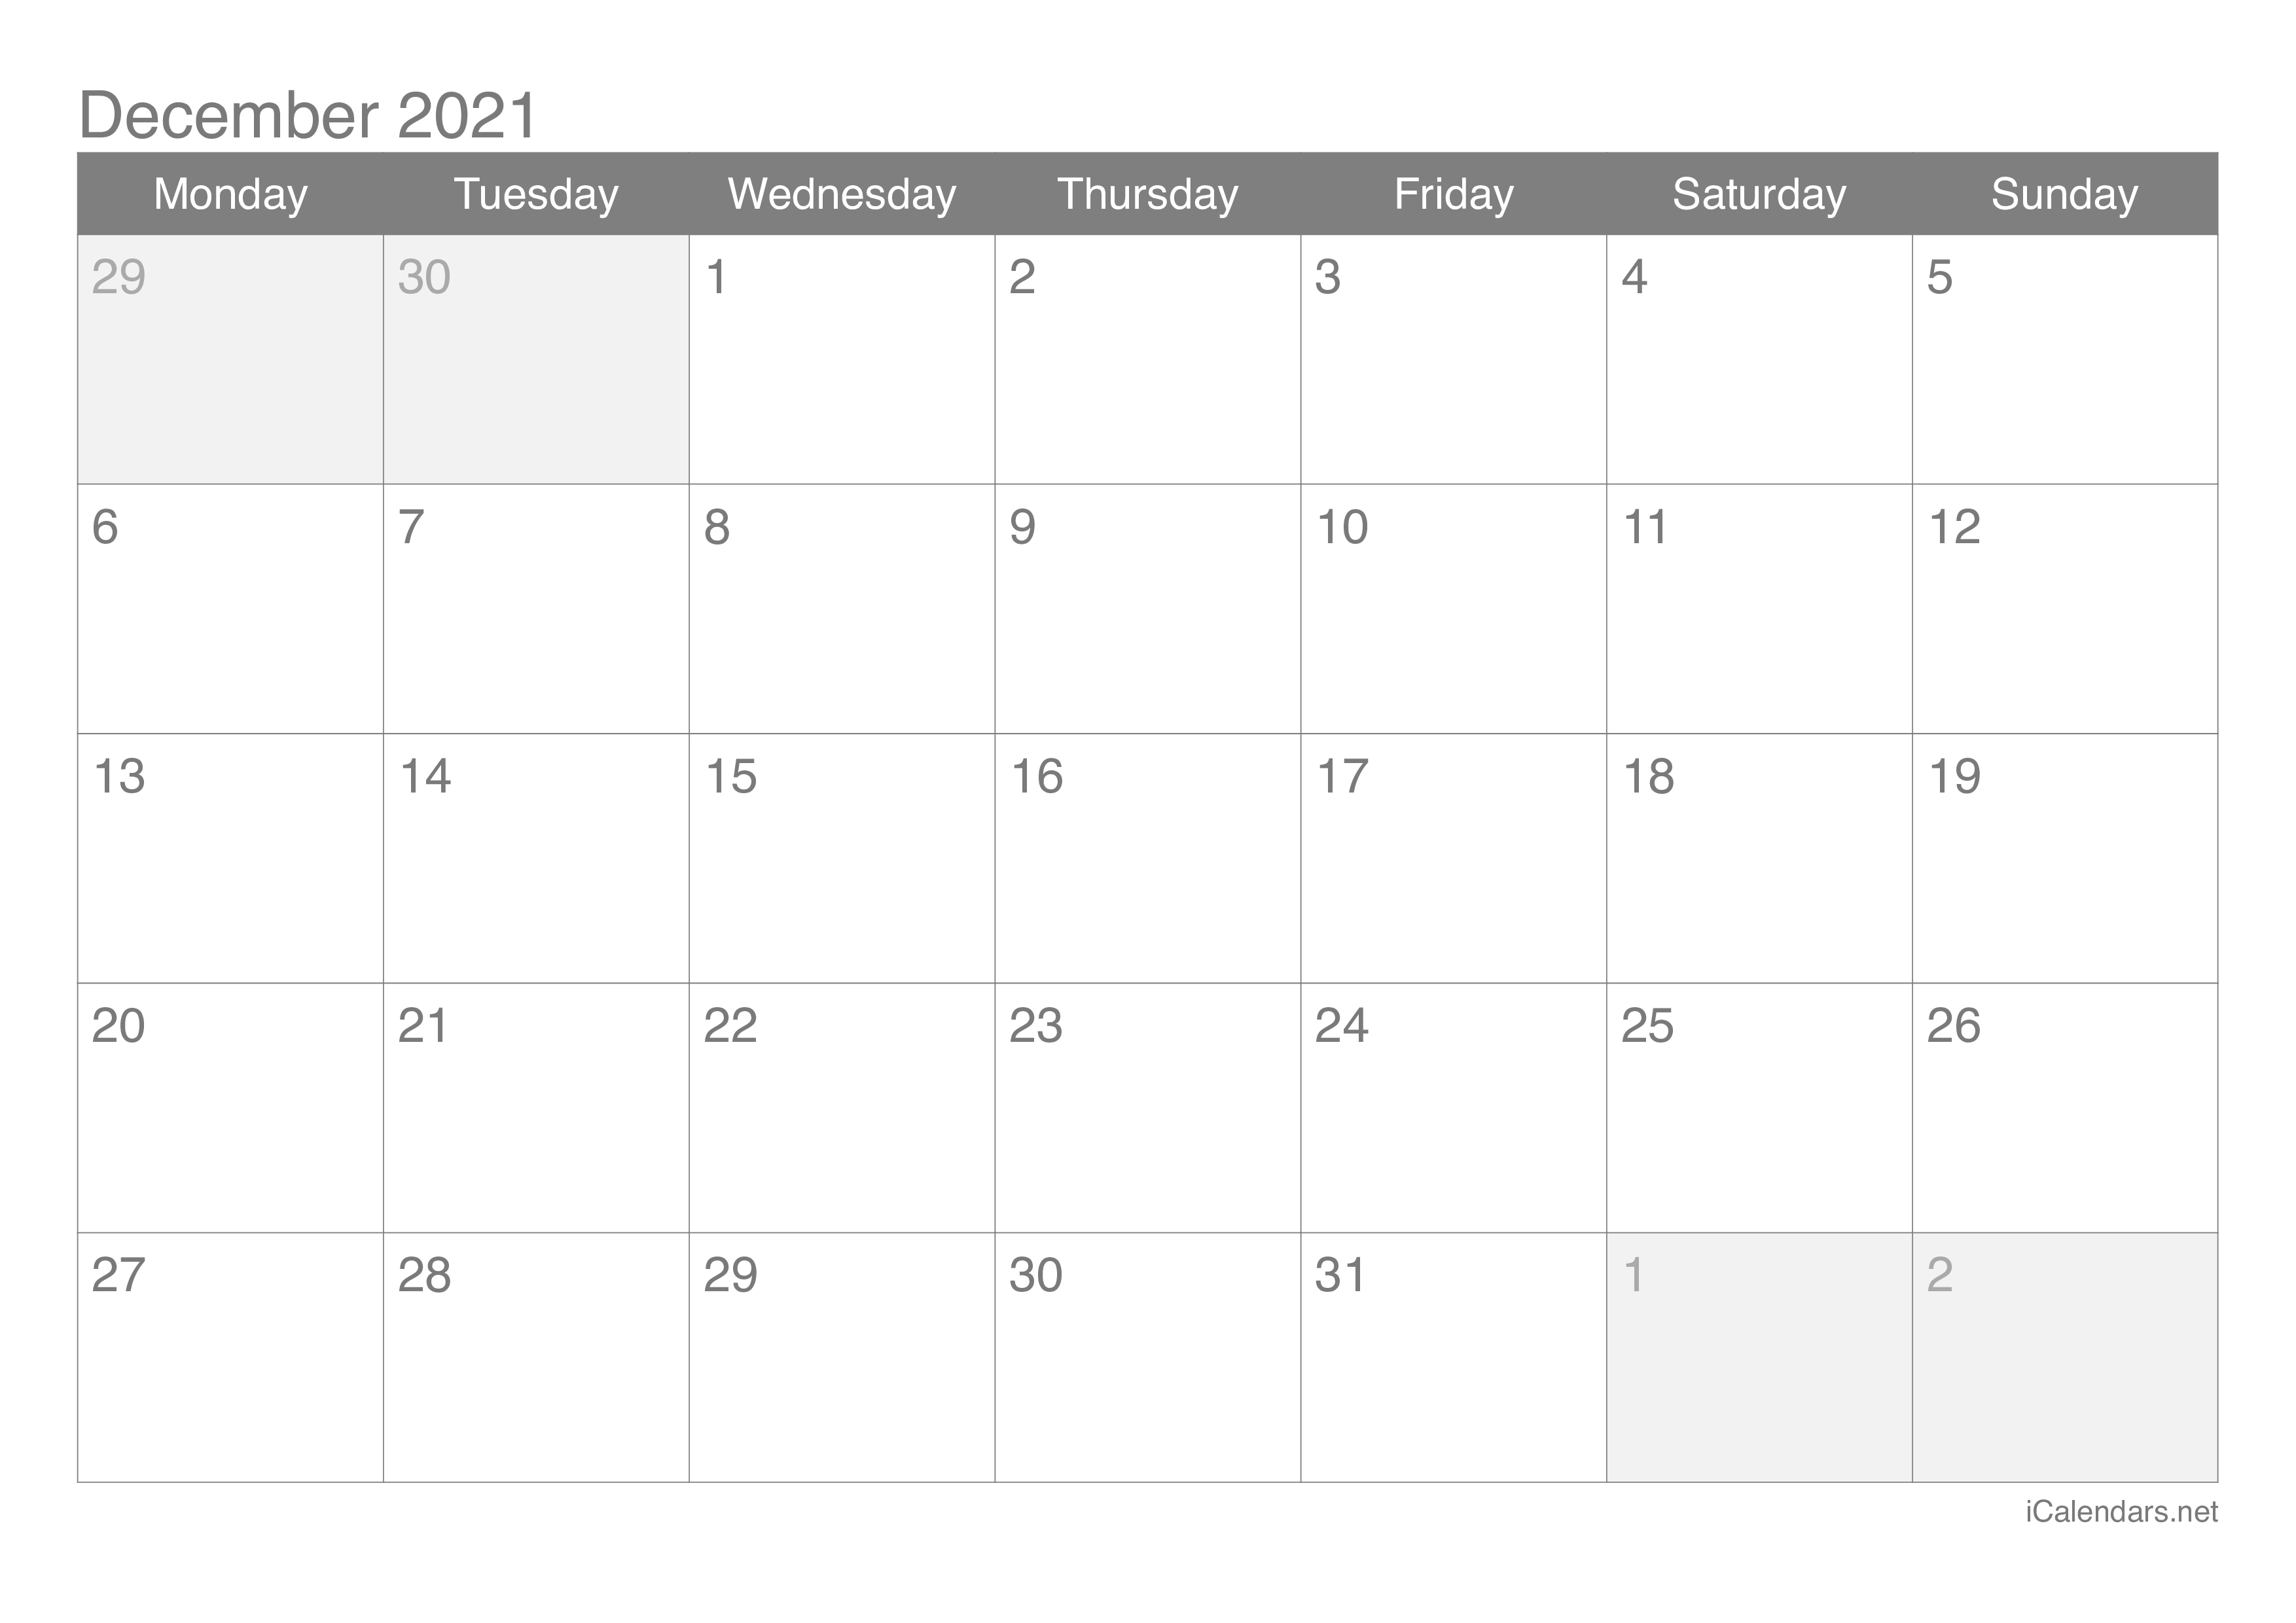 December 2021 Printable Calendar - Icalendars December 2020 Calendar In January 2021 Calendar